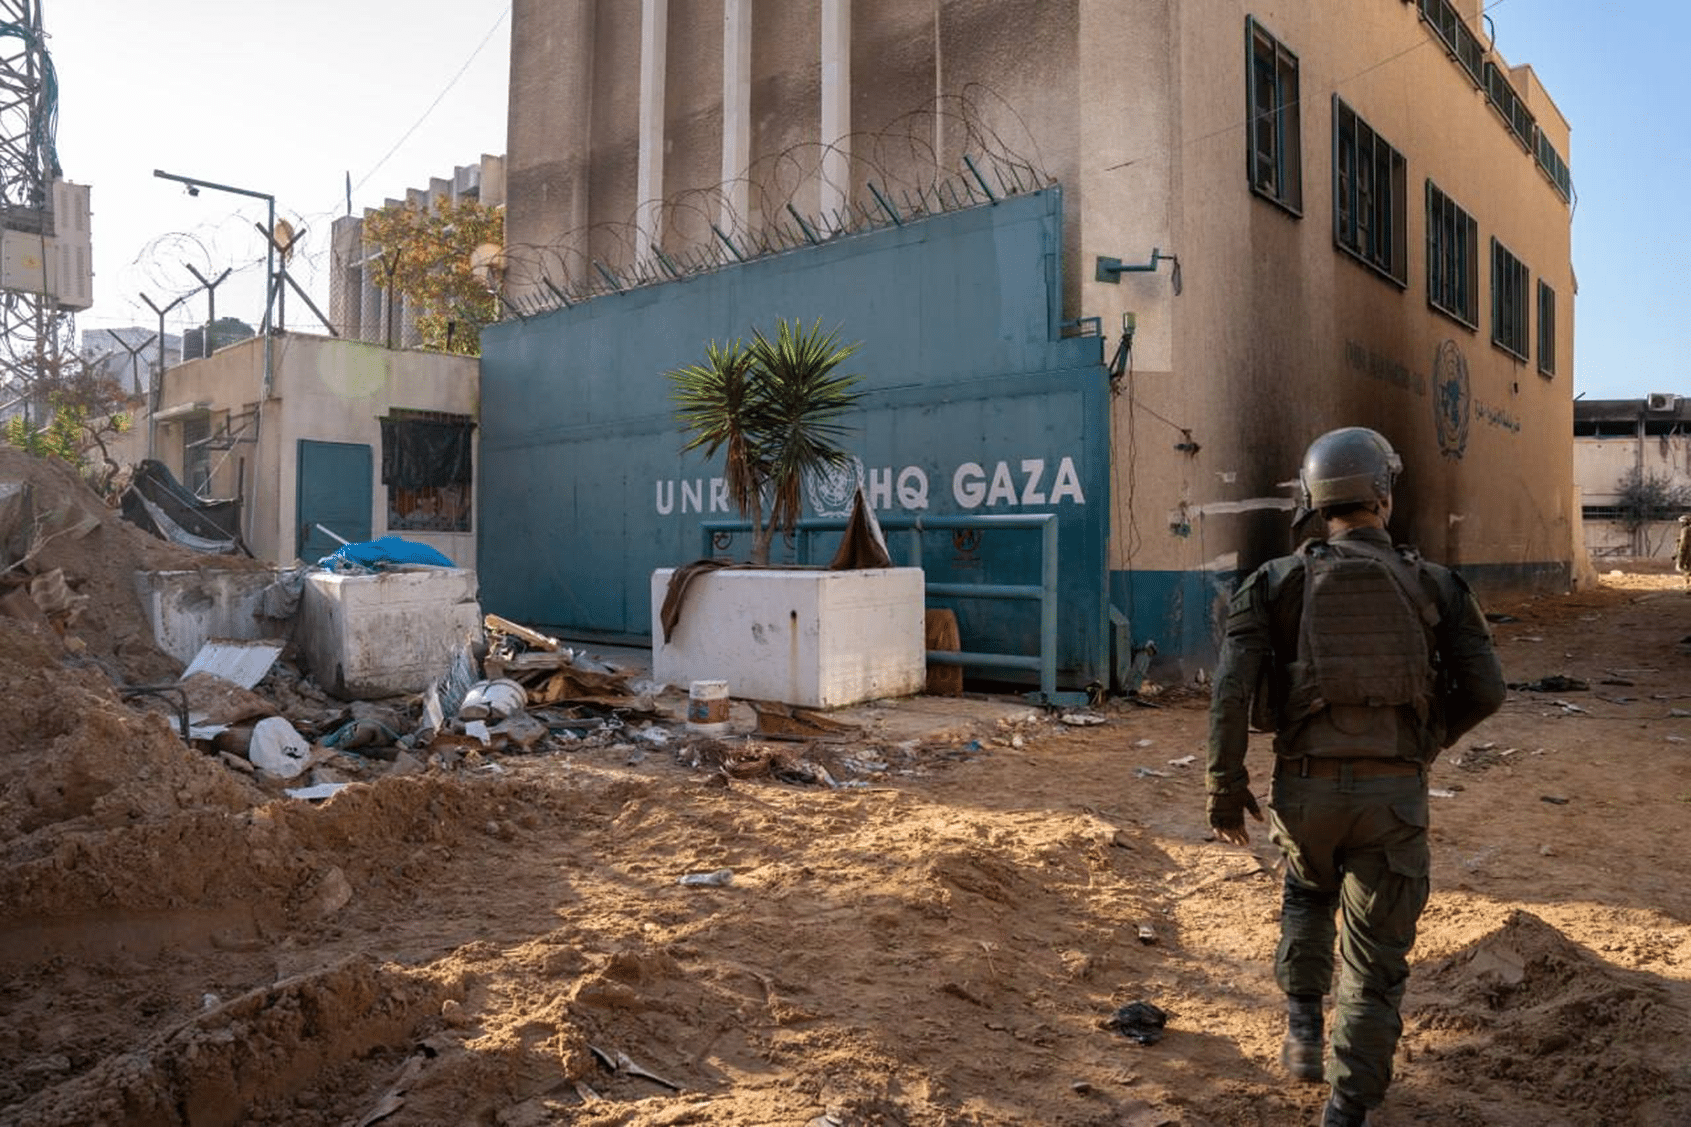 חייל צה"ל במטה הראשי של אונר"א בשכונת רימאל בעזה